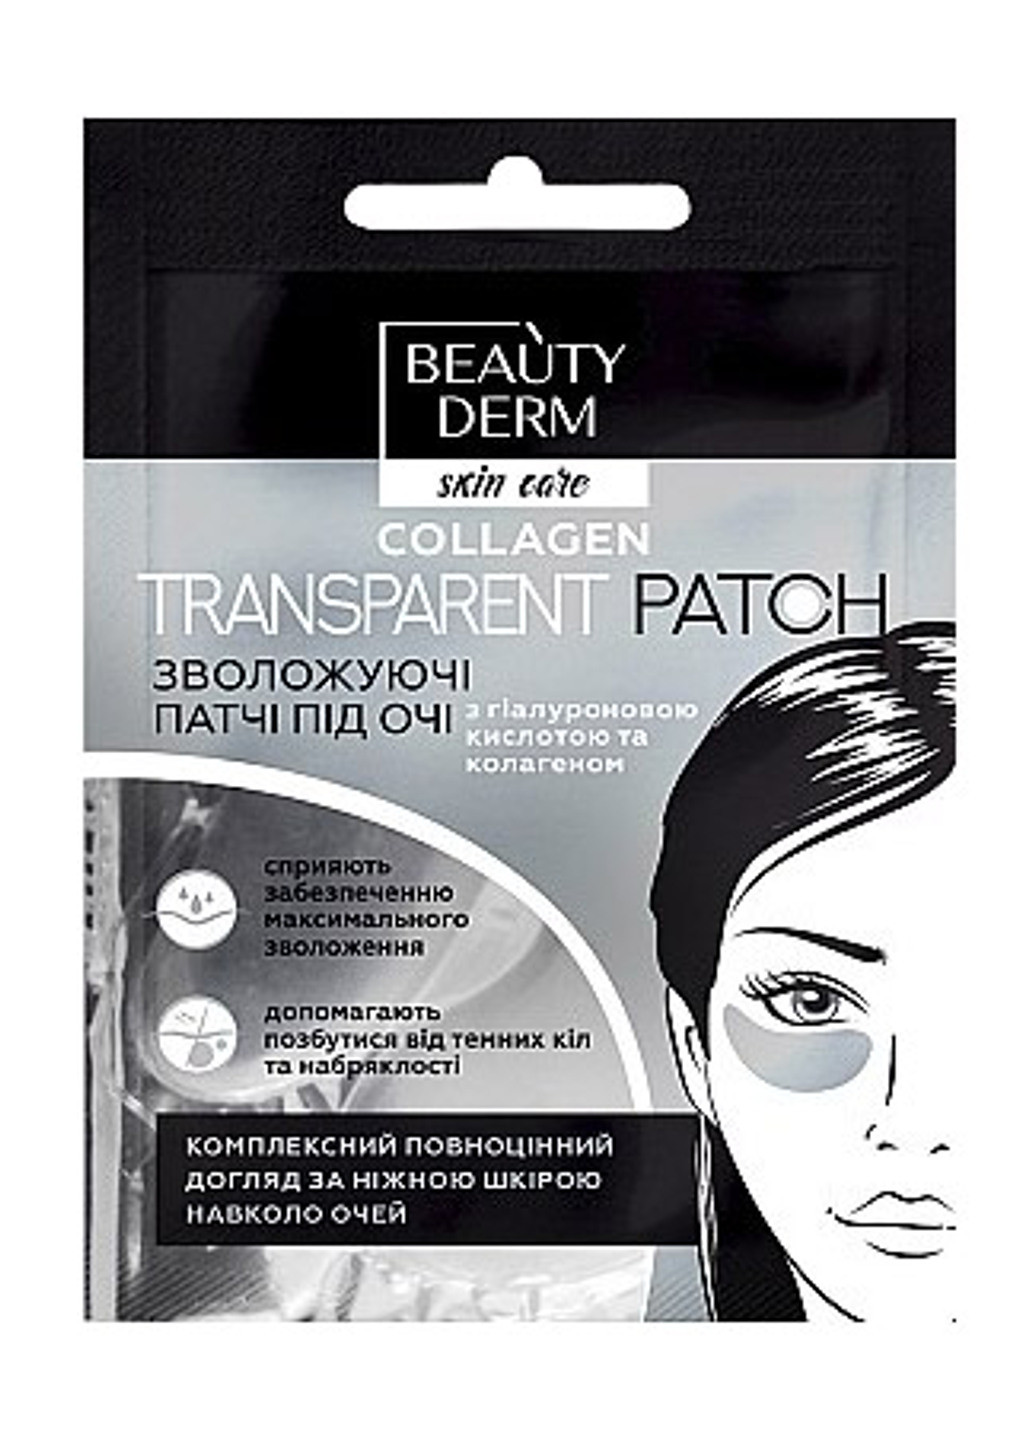 Прозрачные коллагеновые патчи под глаза Collagen Transparent Patch (2 шт.) Beauty Derm не определен (201783343)